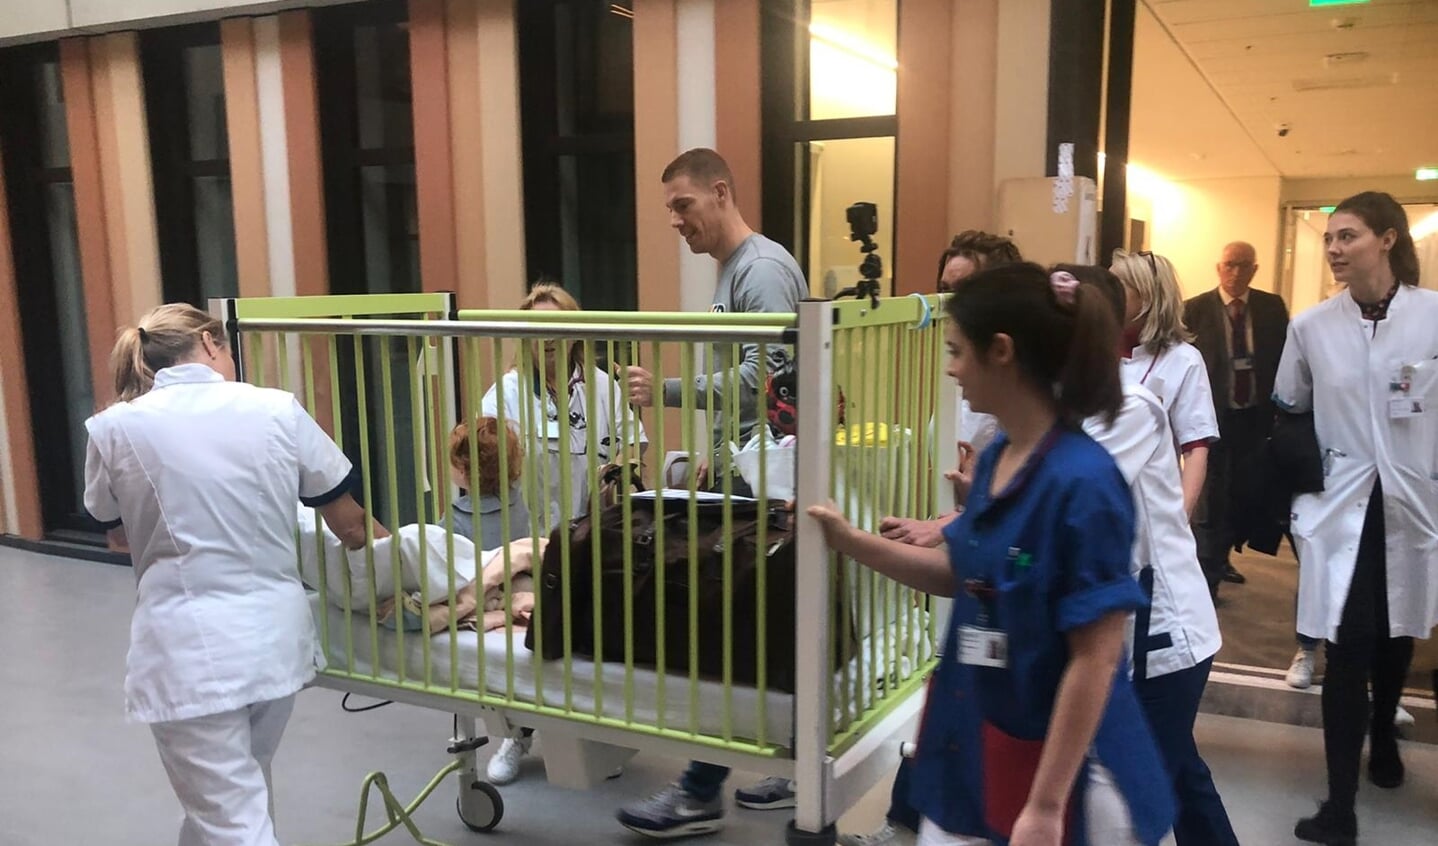 De 17 maanden oude Floor de Zwart is de eerste patiënt die aankomt bij het nieuwe ziekenhuis. 